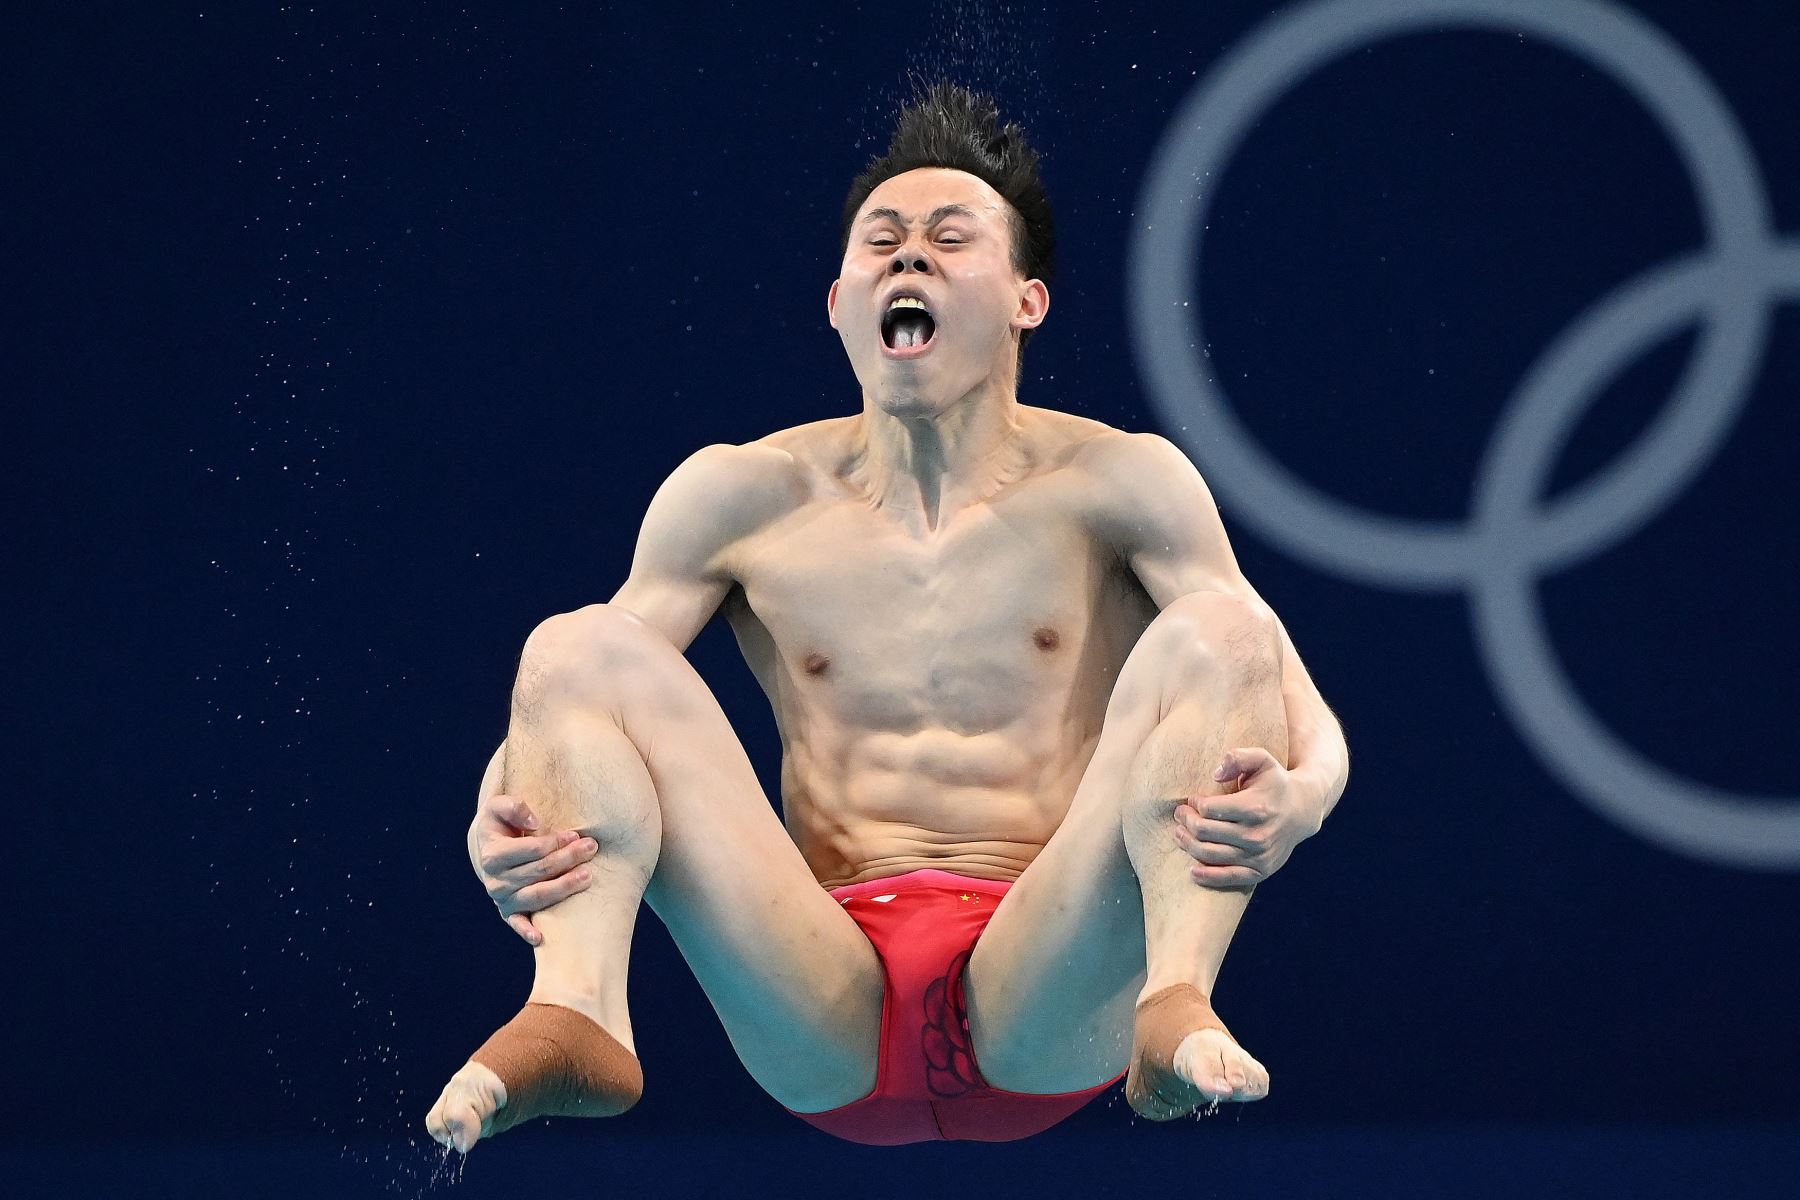 Xie Siyi de China compite para ganar el evento final de salto de trampolín de 3 metros masculino durante los Juegos Olímpicos de Tokio 2020.

Foto: AFP